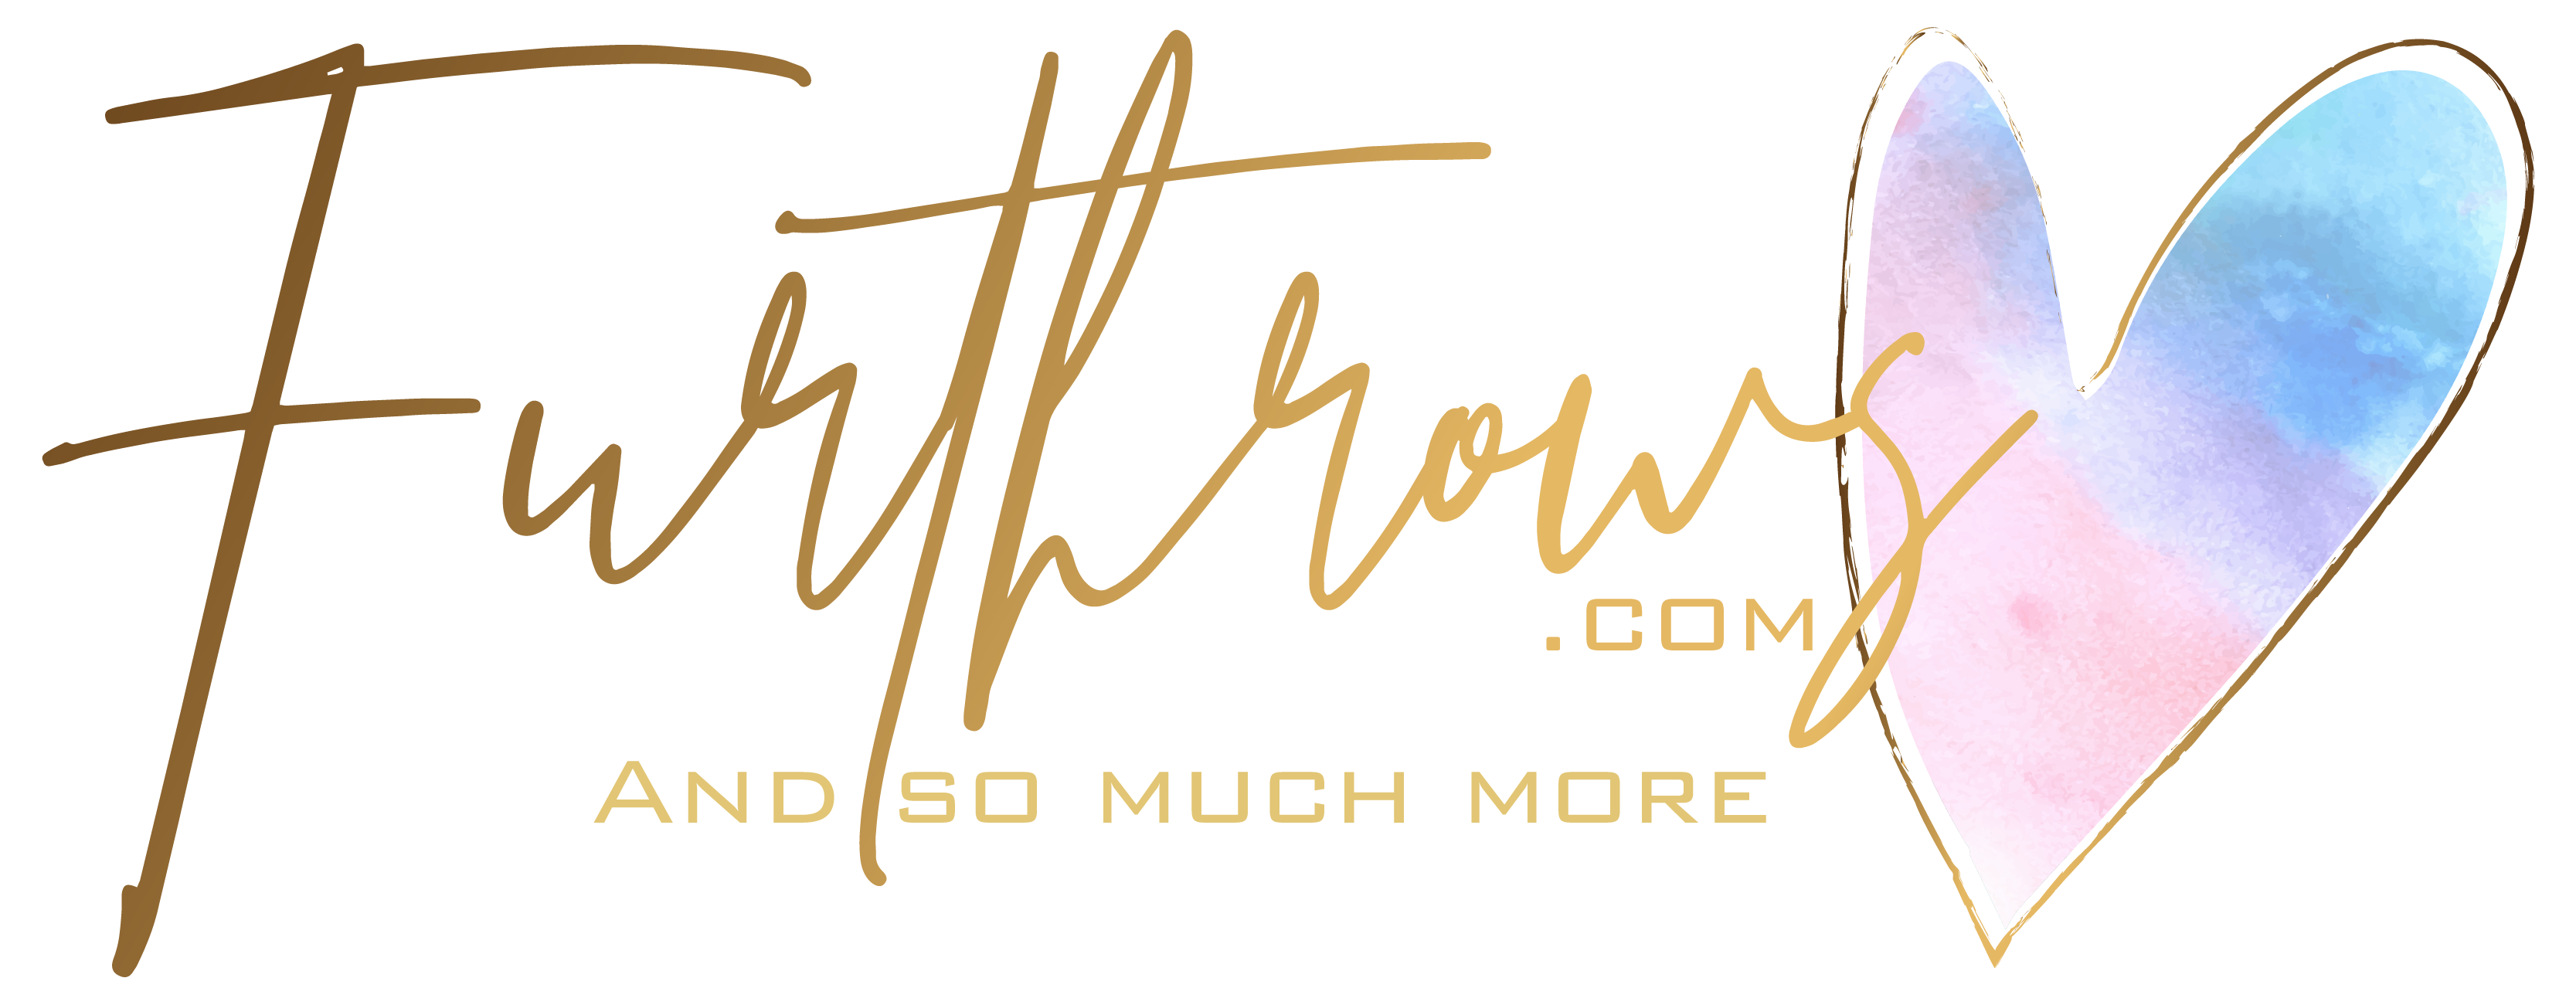 FurThrows.com